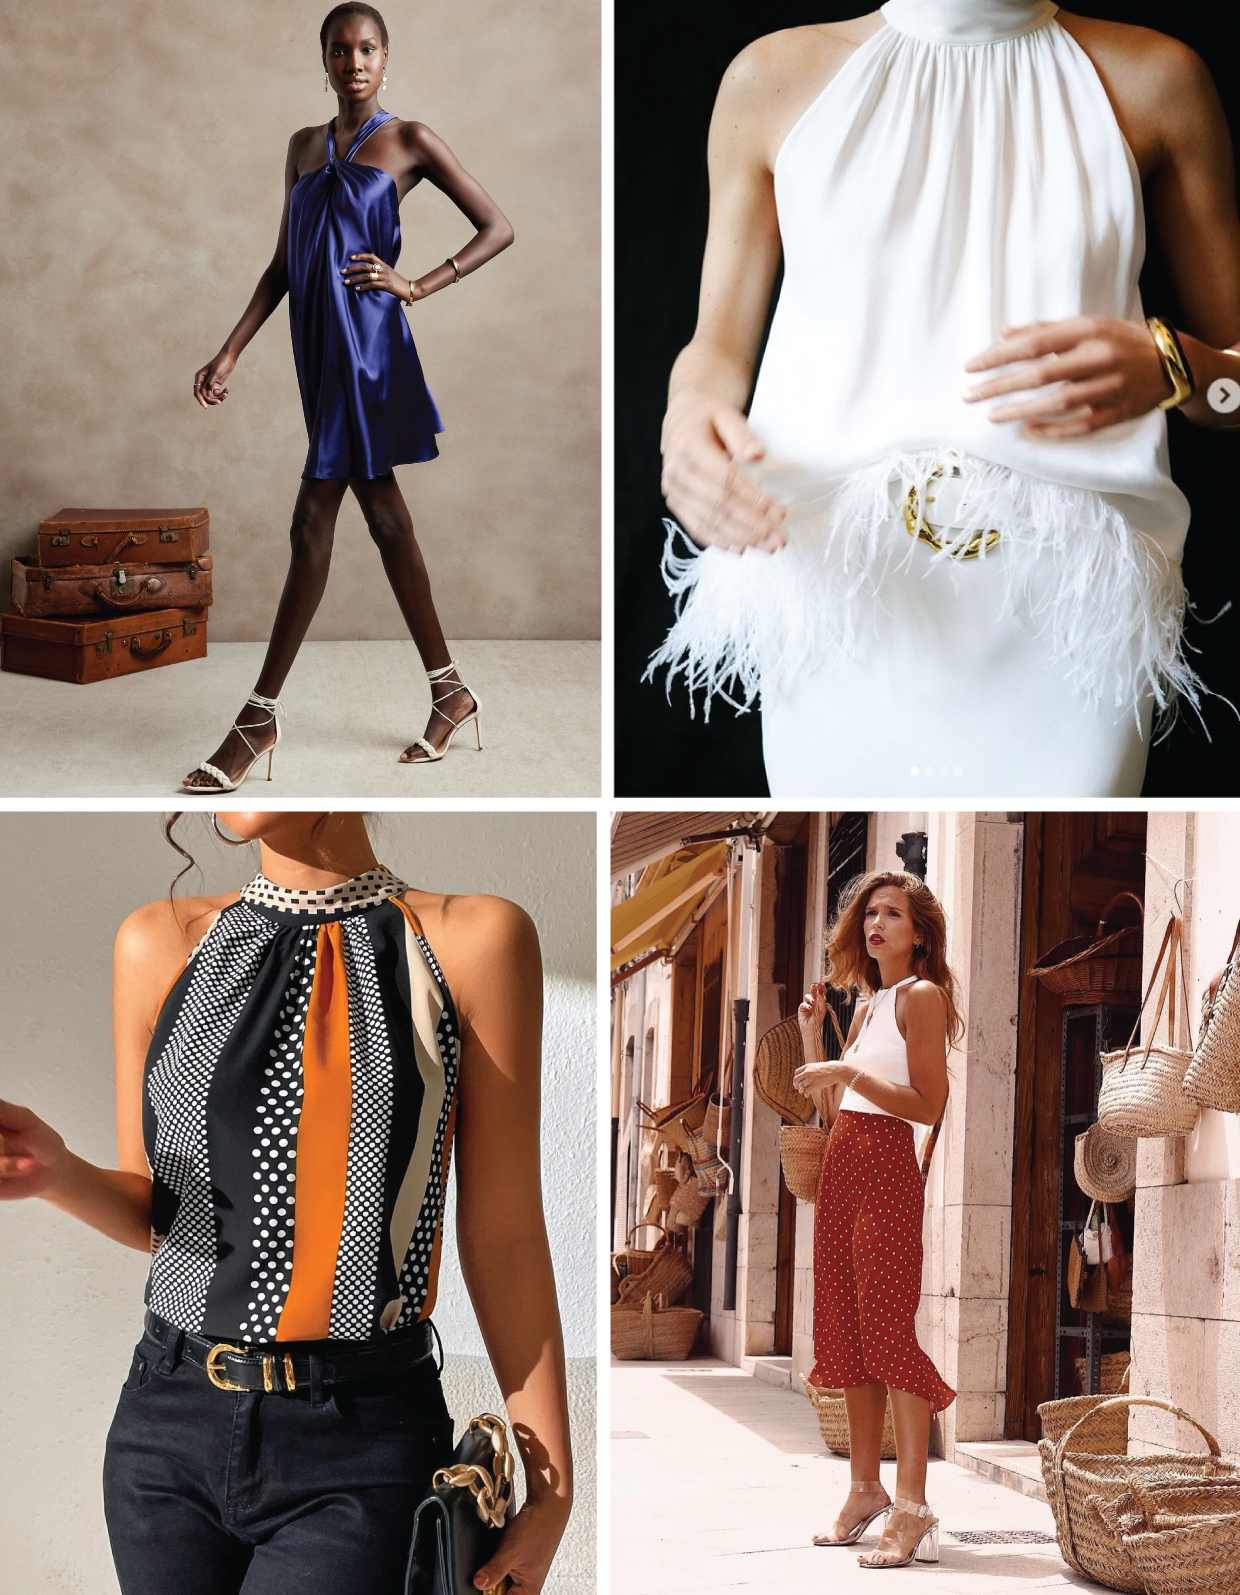 Introducing the Sintra Halter Top + Dress, Blog